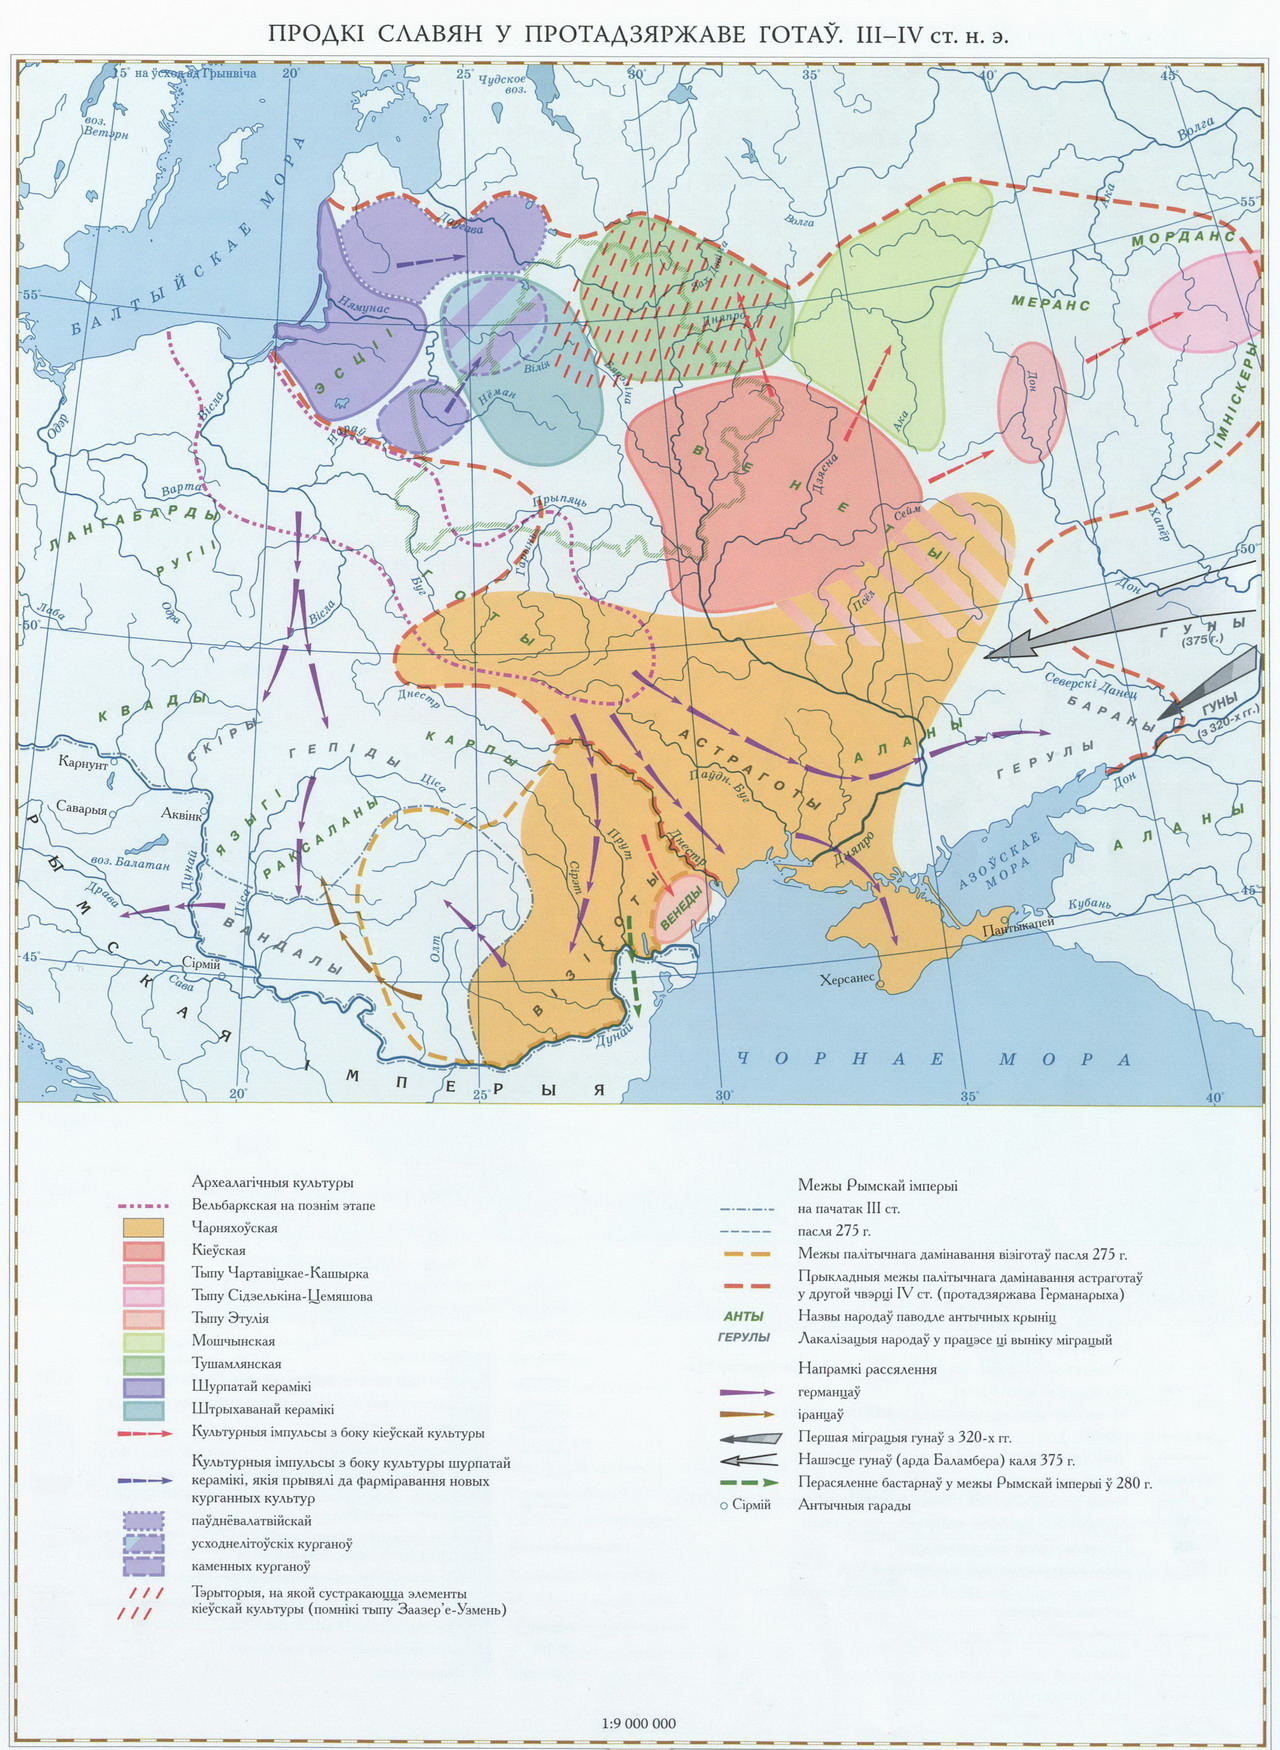 Венеды на карте Восточной Европы в готскую эпоху по В. Носевичу